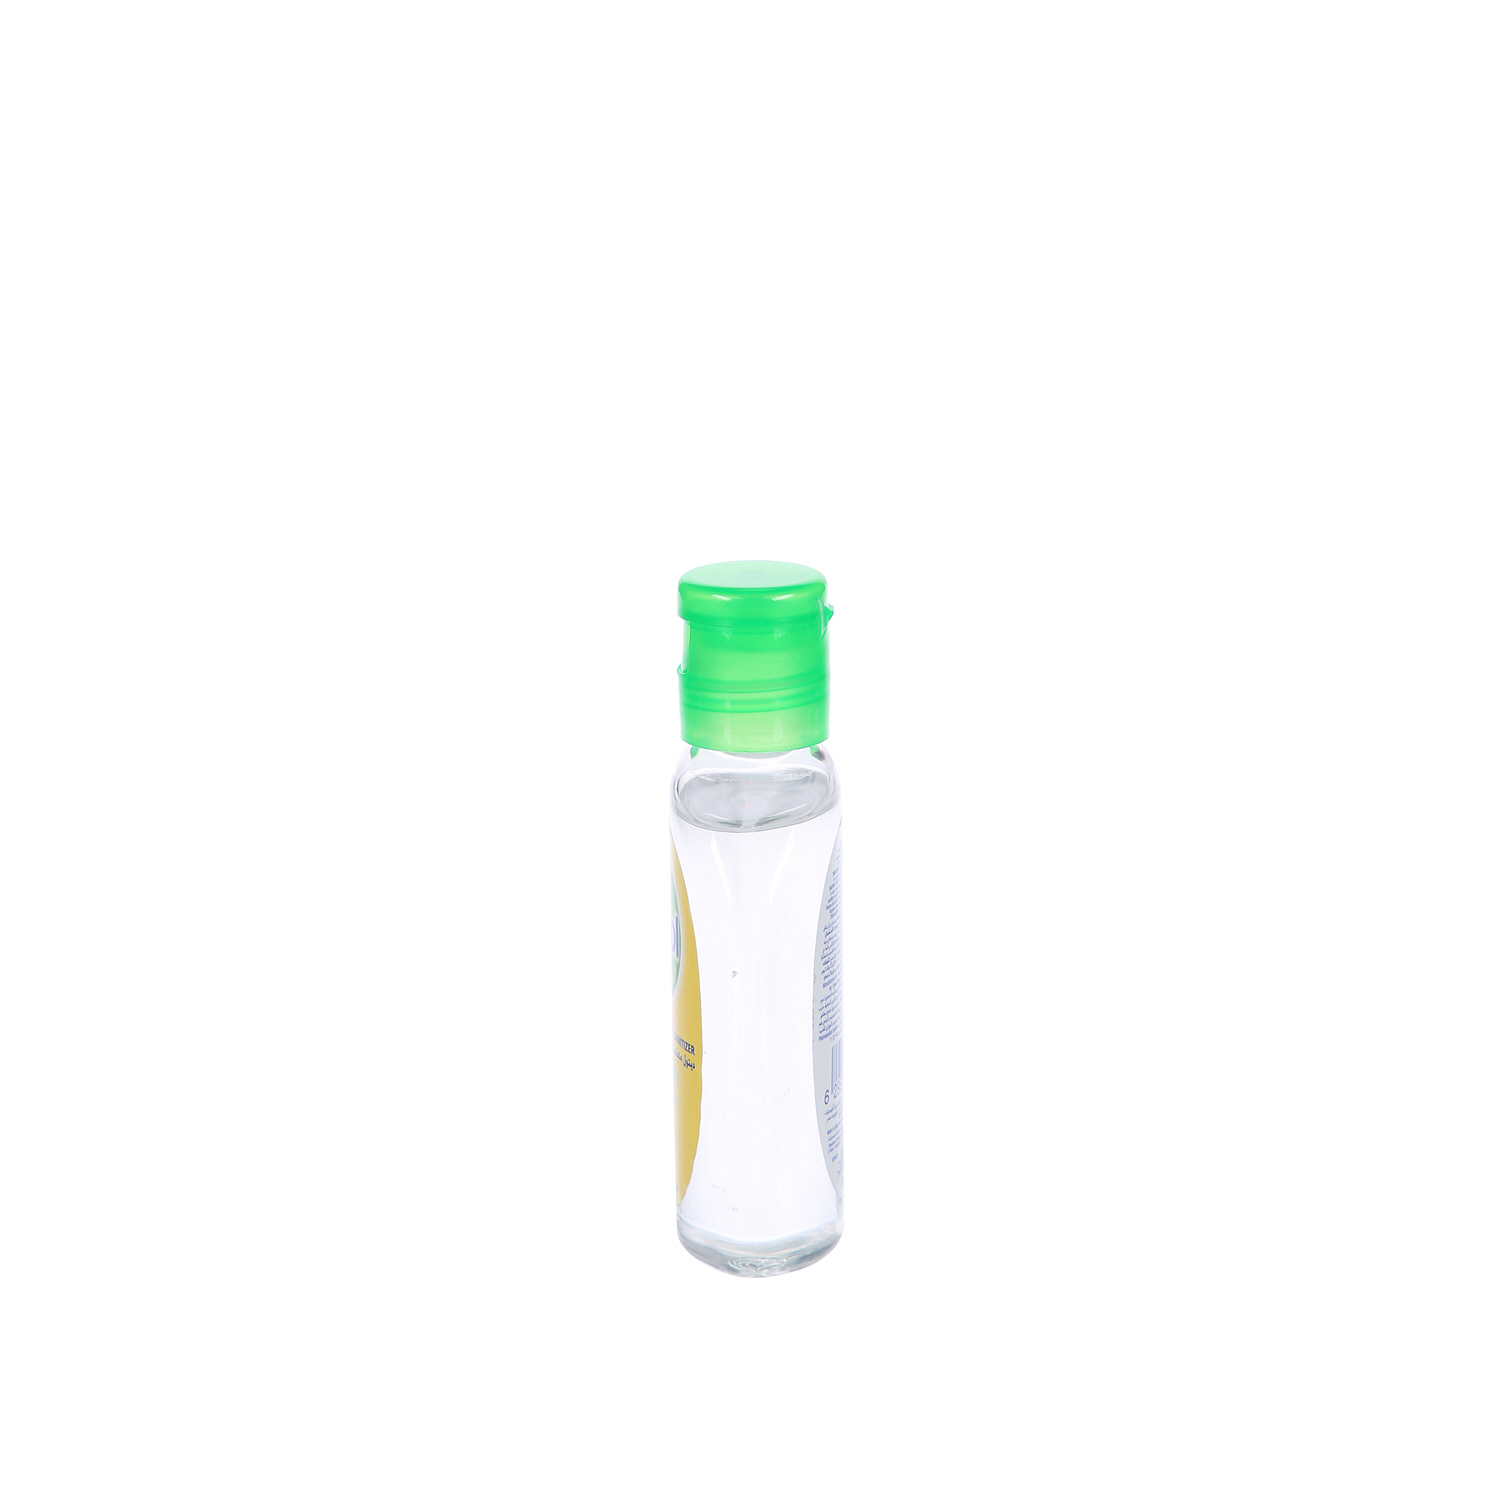 Dettol Instant Hand Sanitizer Spring Fresh 50 ml